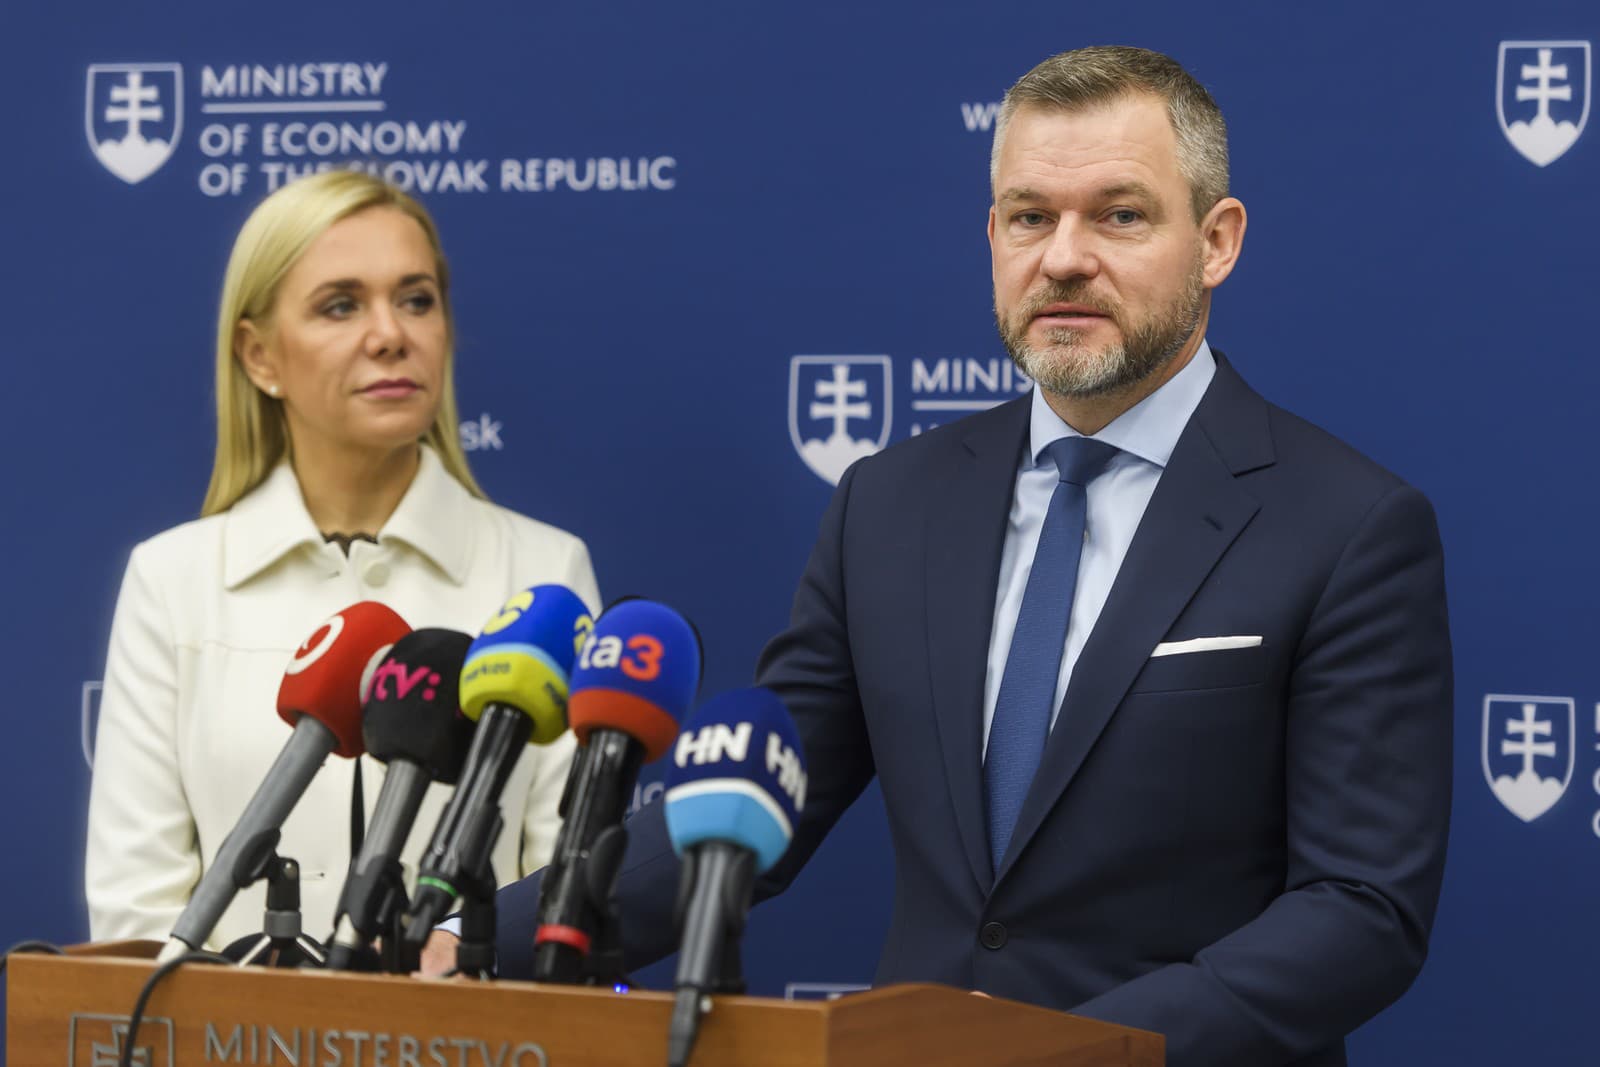 Predseda NR SR Peter Pellegrini a podpredsedníčka vlády a ministerka hospodárstva SR Denisa Saková